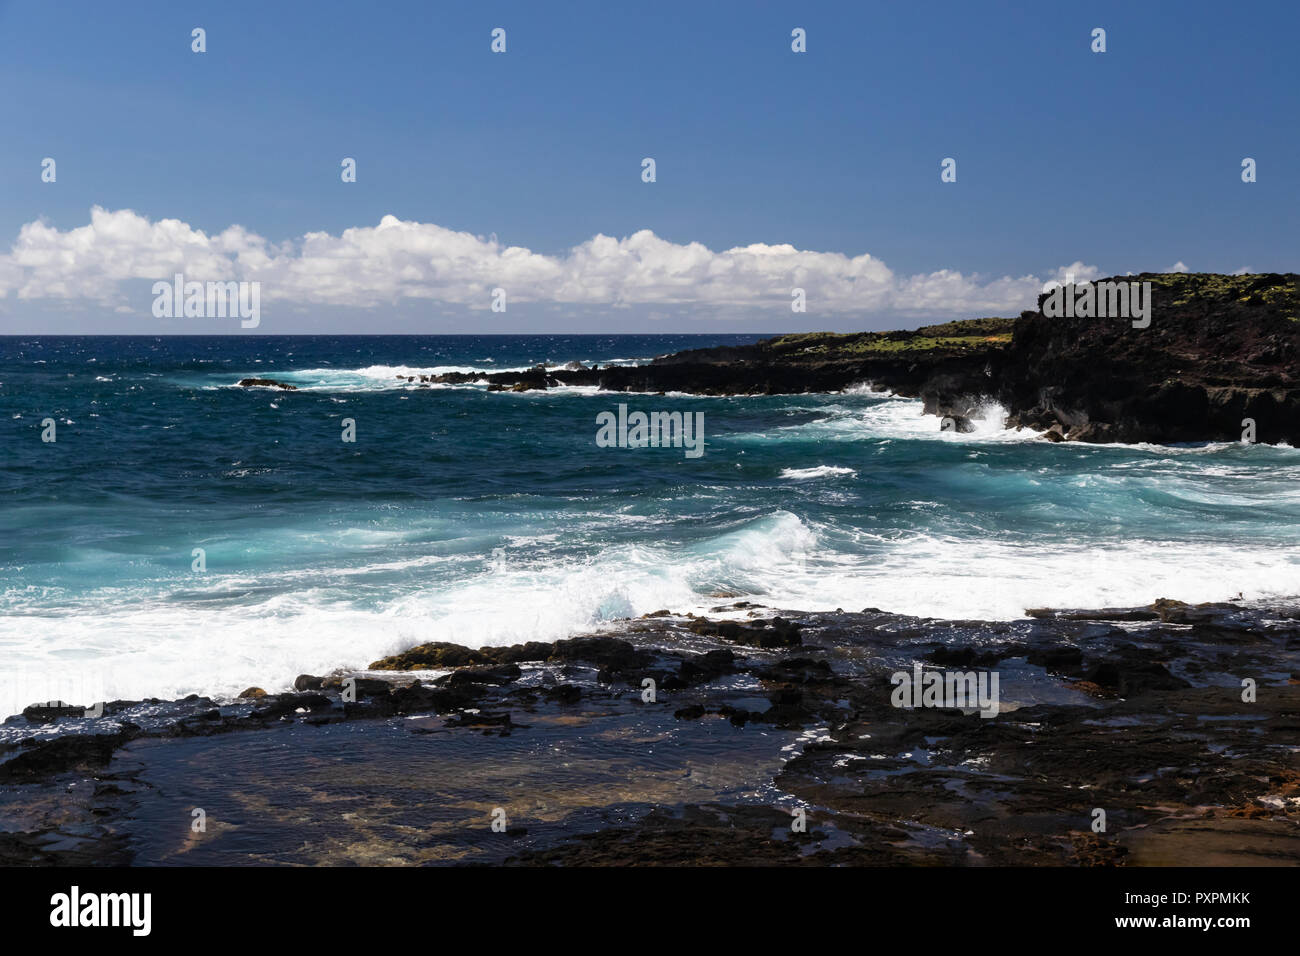 Rivage sur Grande Île d'Hawaï près de South Point. Bleu profond de l'océan Pacifique, les vagues se brisant sur le littoral. Petite cuvette en premier plan. Banque D'Images